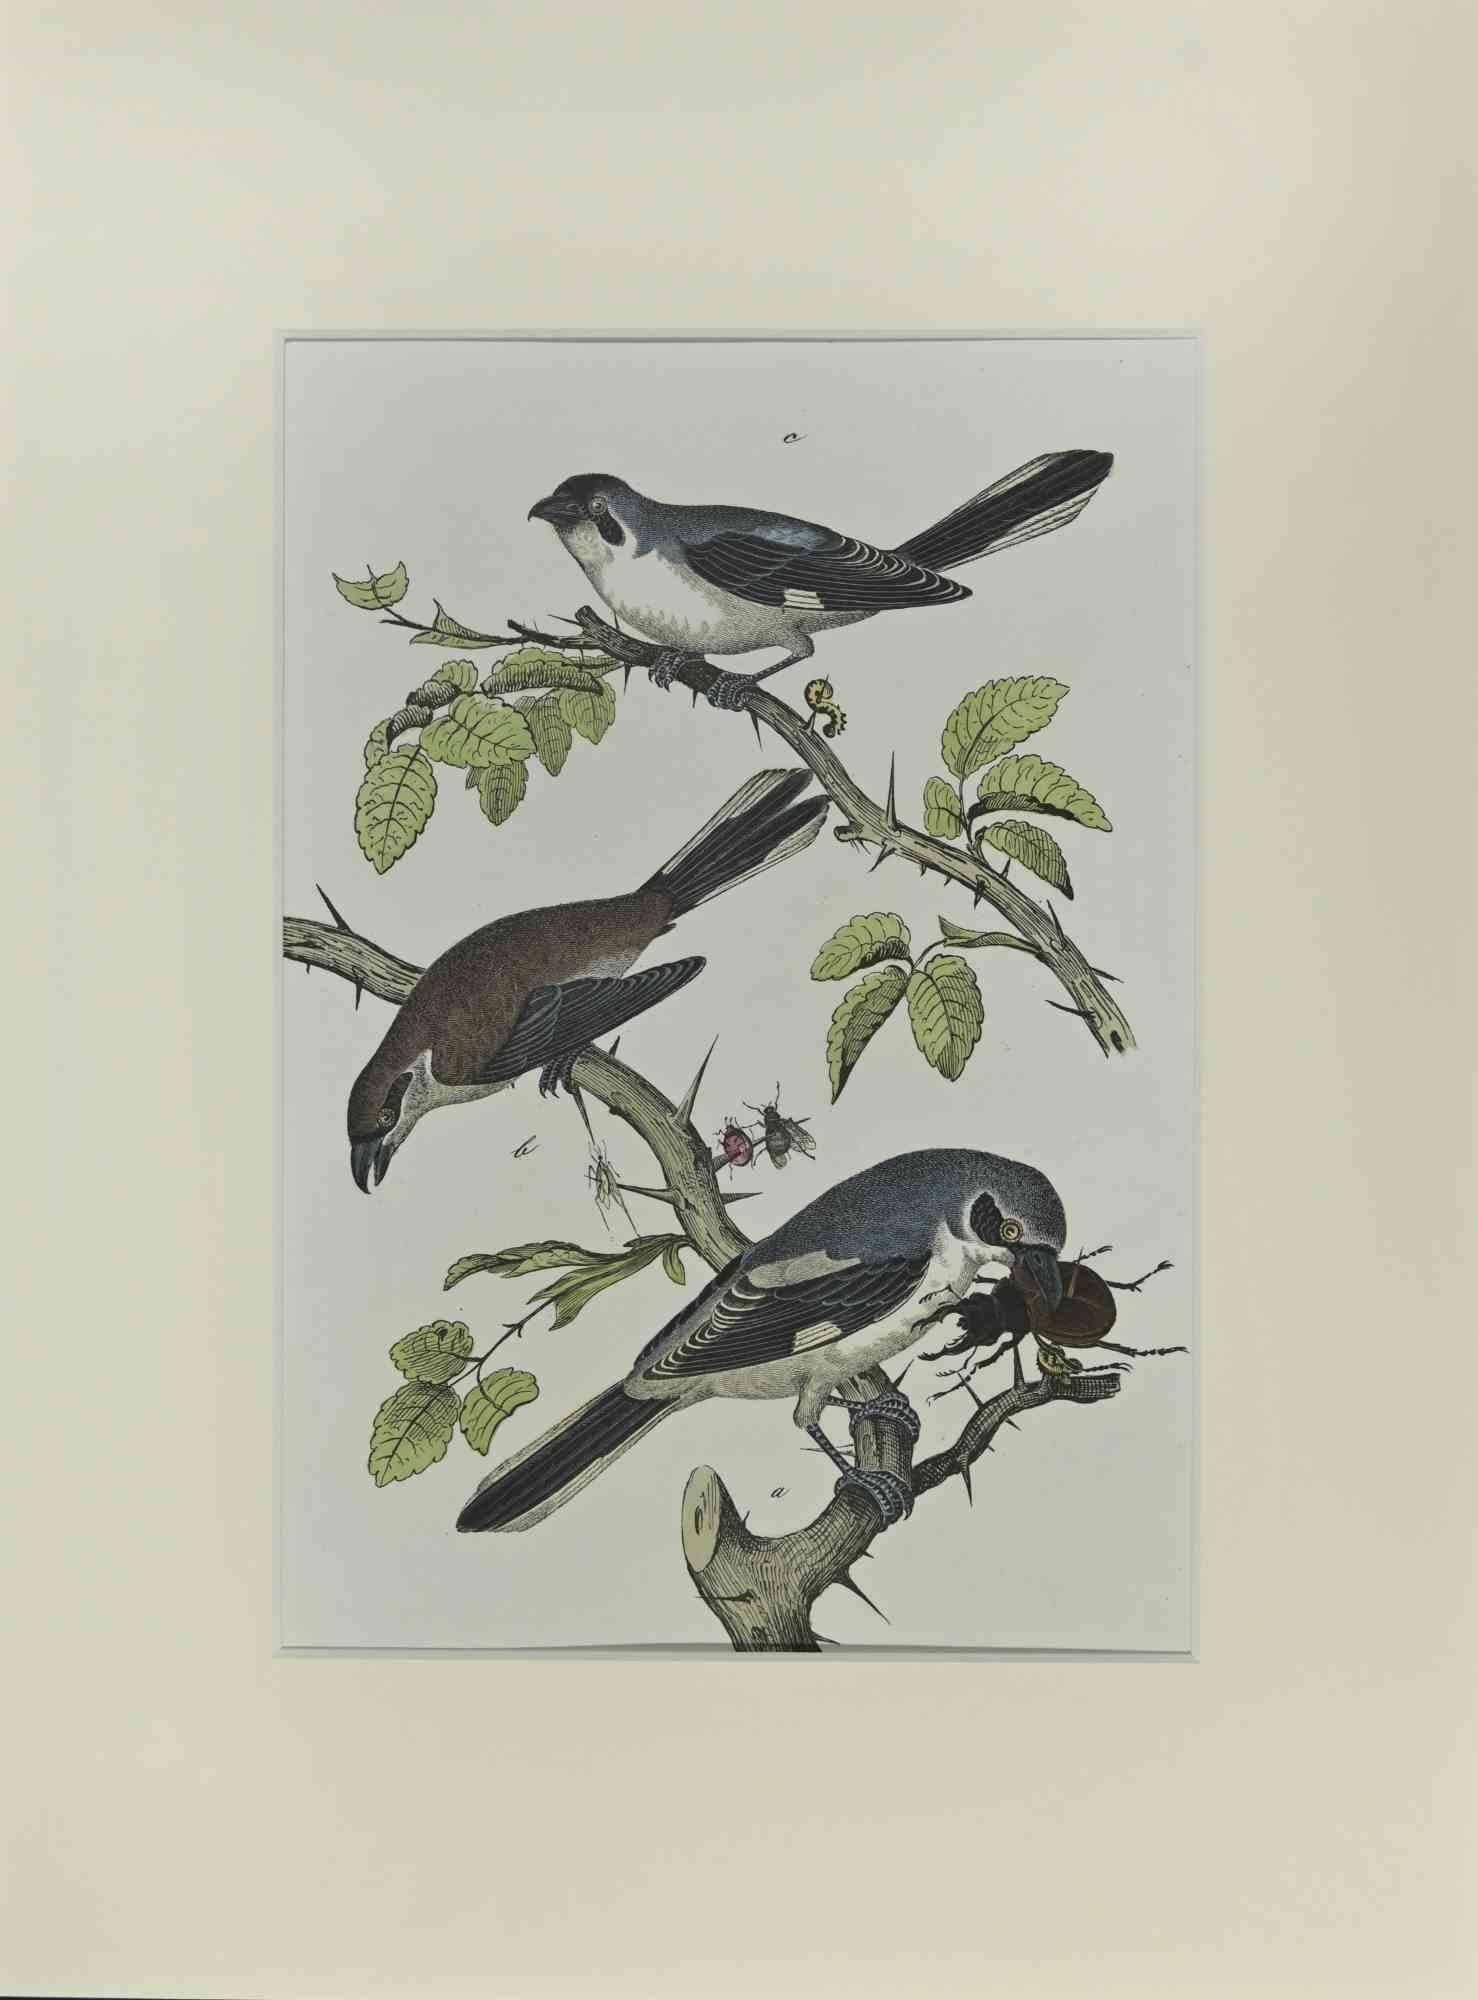 Petits oiseaux bleus est une gravure à l'eau-forte réalisée à la main par Gotthilf Heinrich von Schubert - Johann Friedrich Naumann, Illustration tirée de Histoire naturelle des oiseaux en images, publiée par Stuttgart et Esslingen, Schreiber et